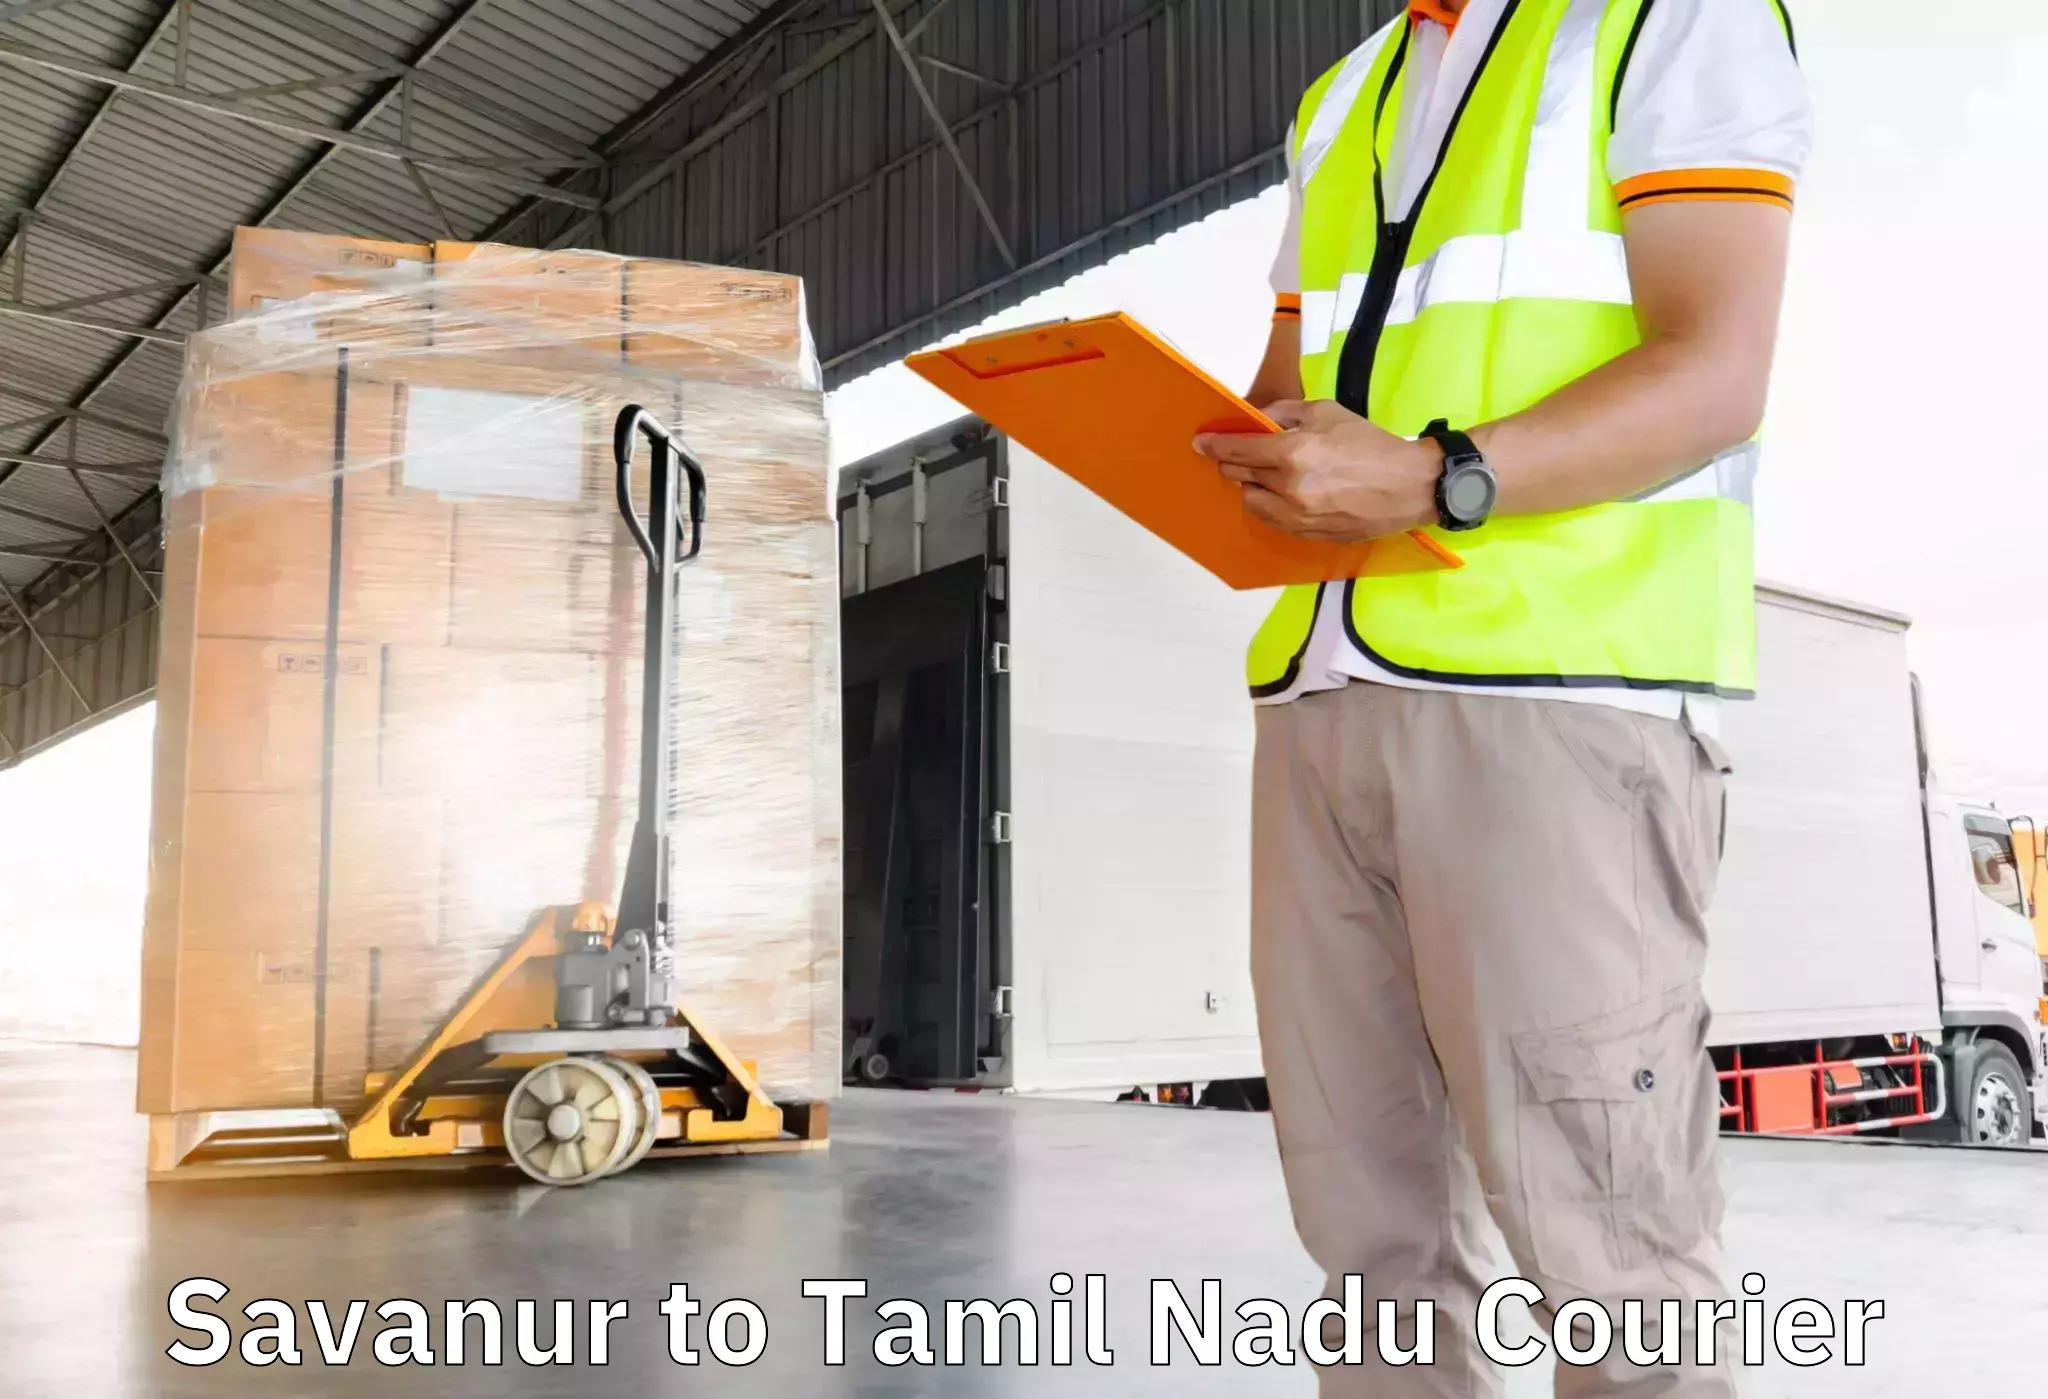 Furniture transport professionals Savanur to Kulithalai